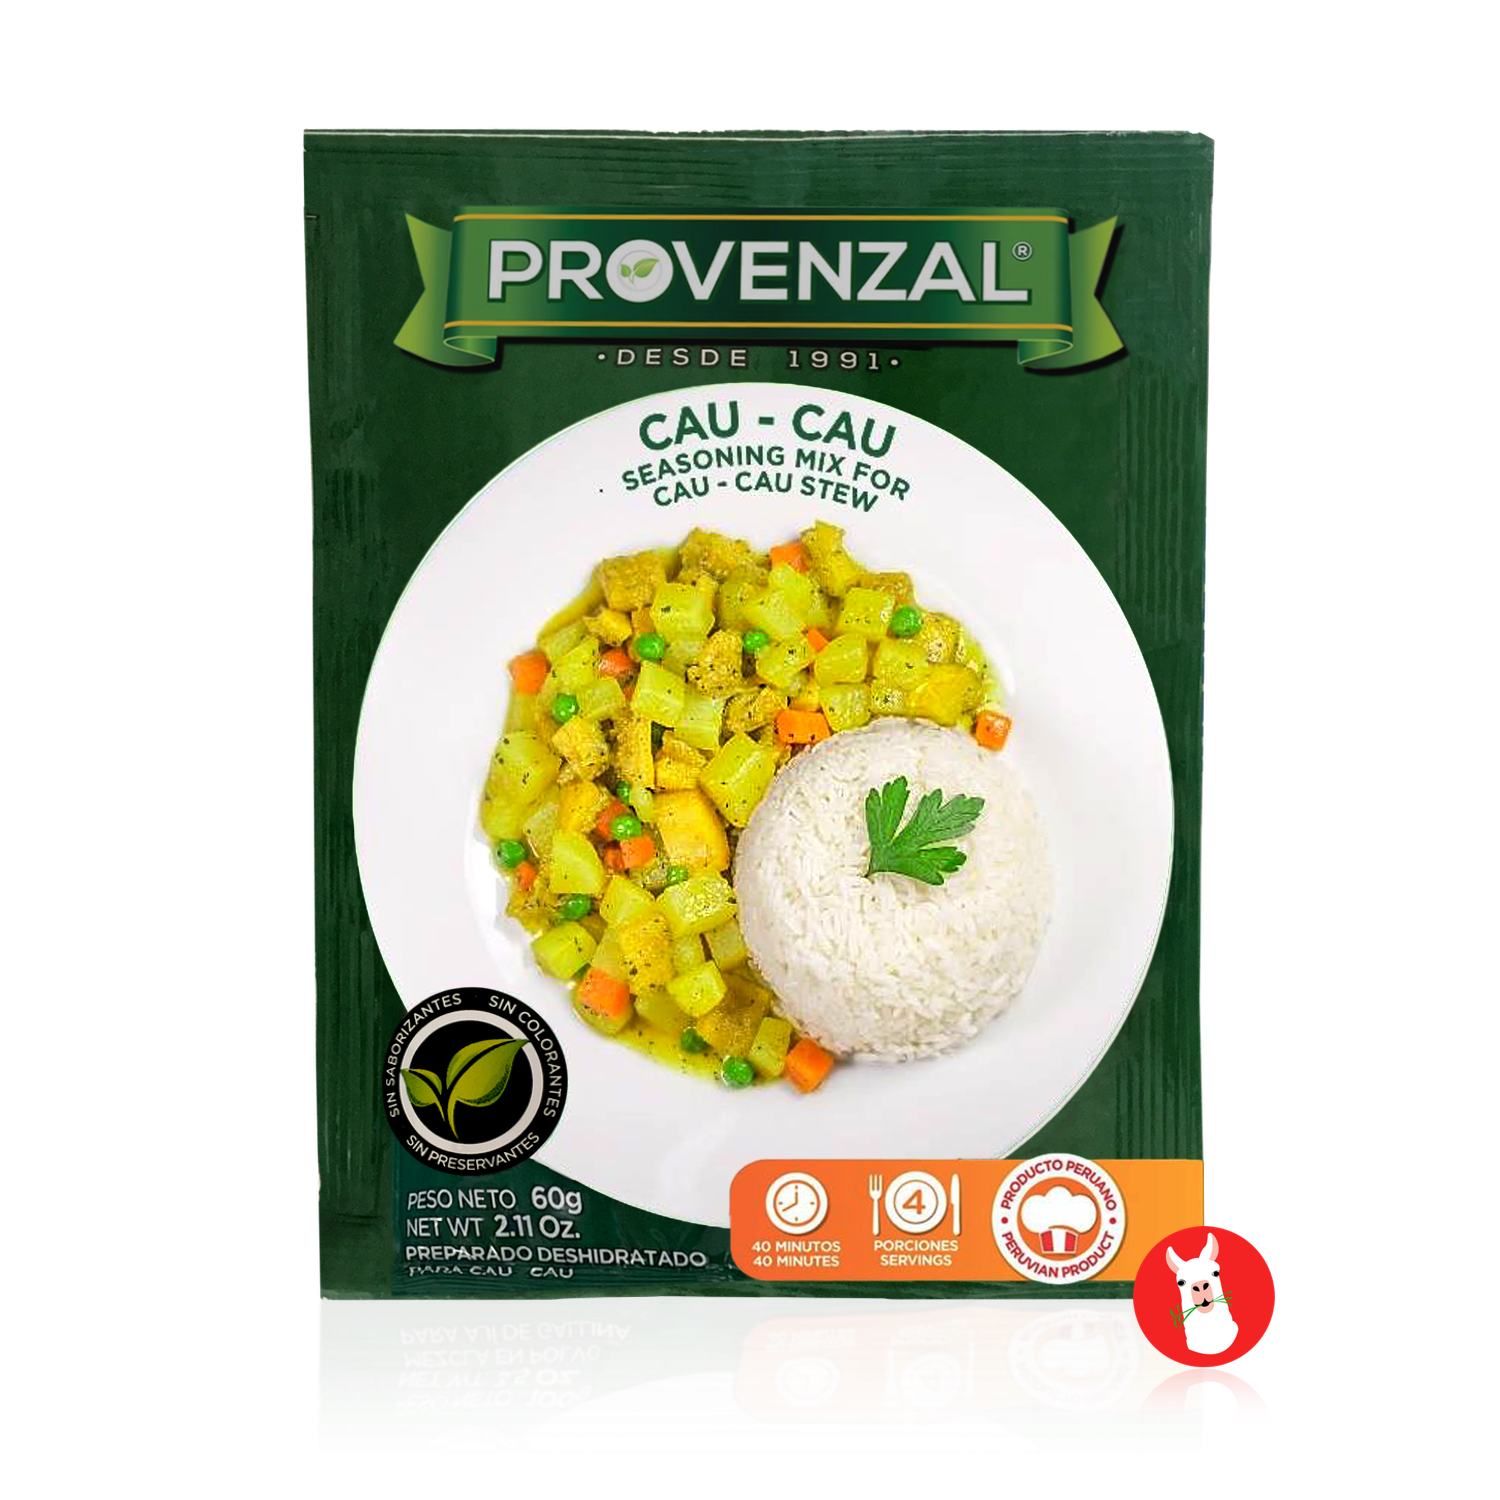 Provenzal Arroz con Pollo Seasoning Mix - 2 oz